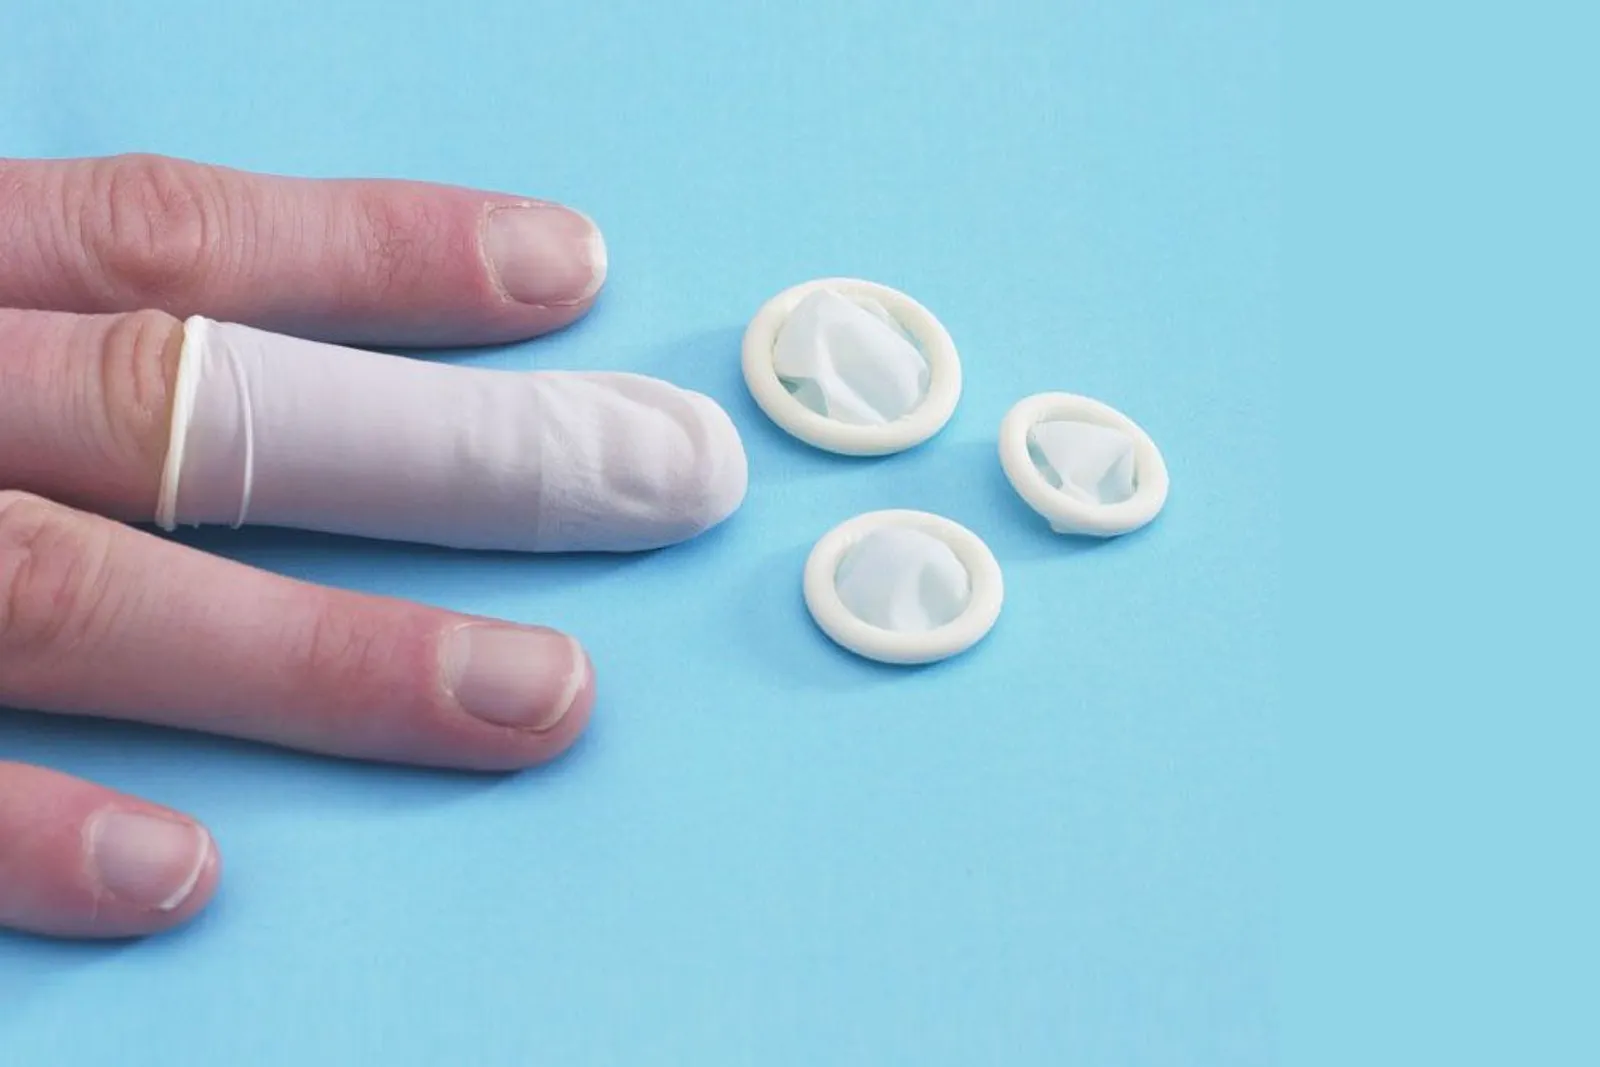 Nggak Cuma 1, Ini 5 Tipe Kondom yang Belum Kamu Tahu Beserta Contohnya